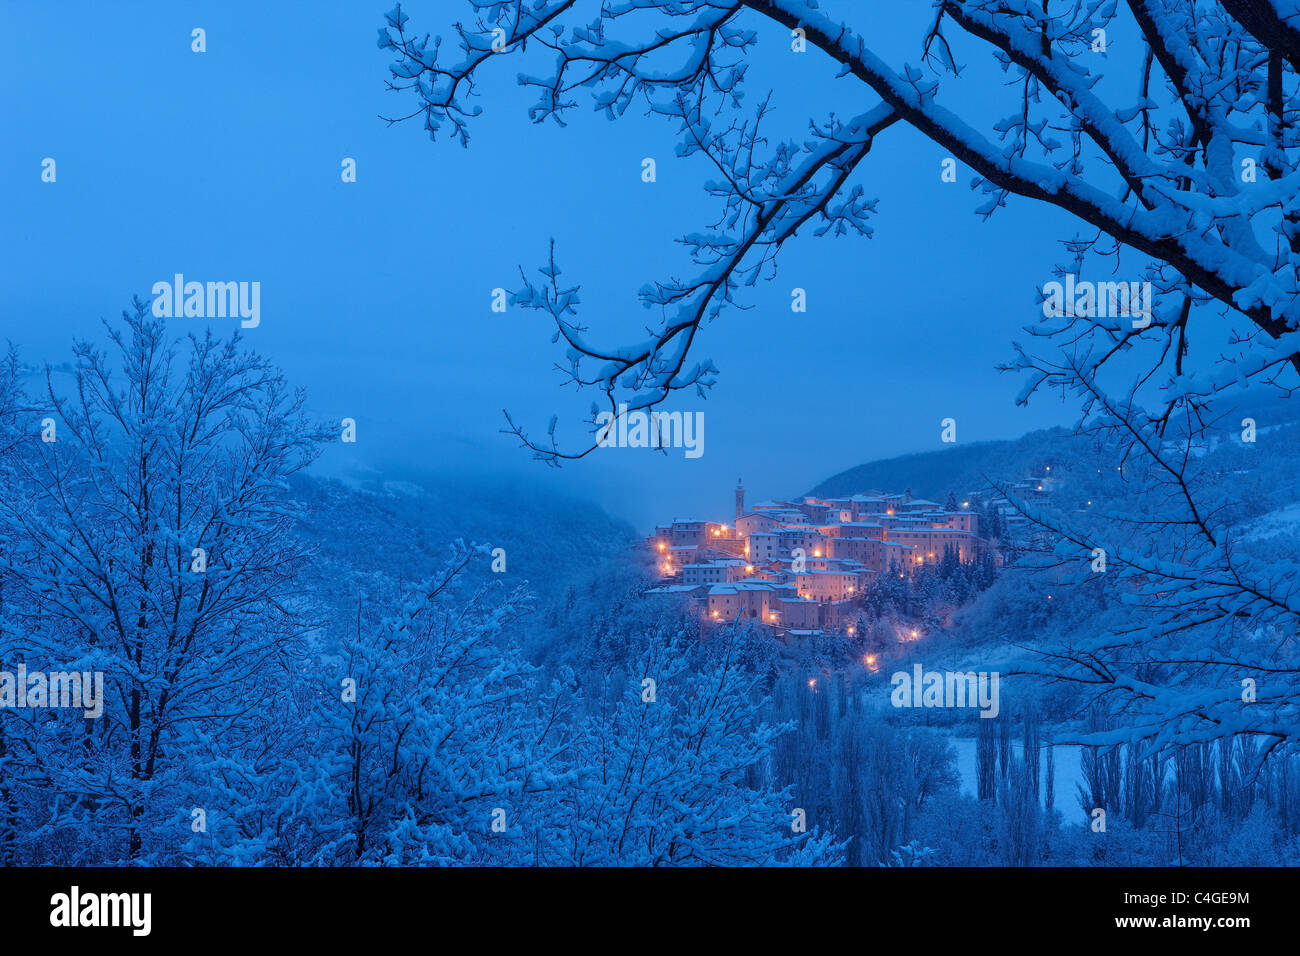 Preci at dawn in winter, Valnerina, Monti Sibillini National Park, Umbria, Italy Stock Photo